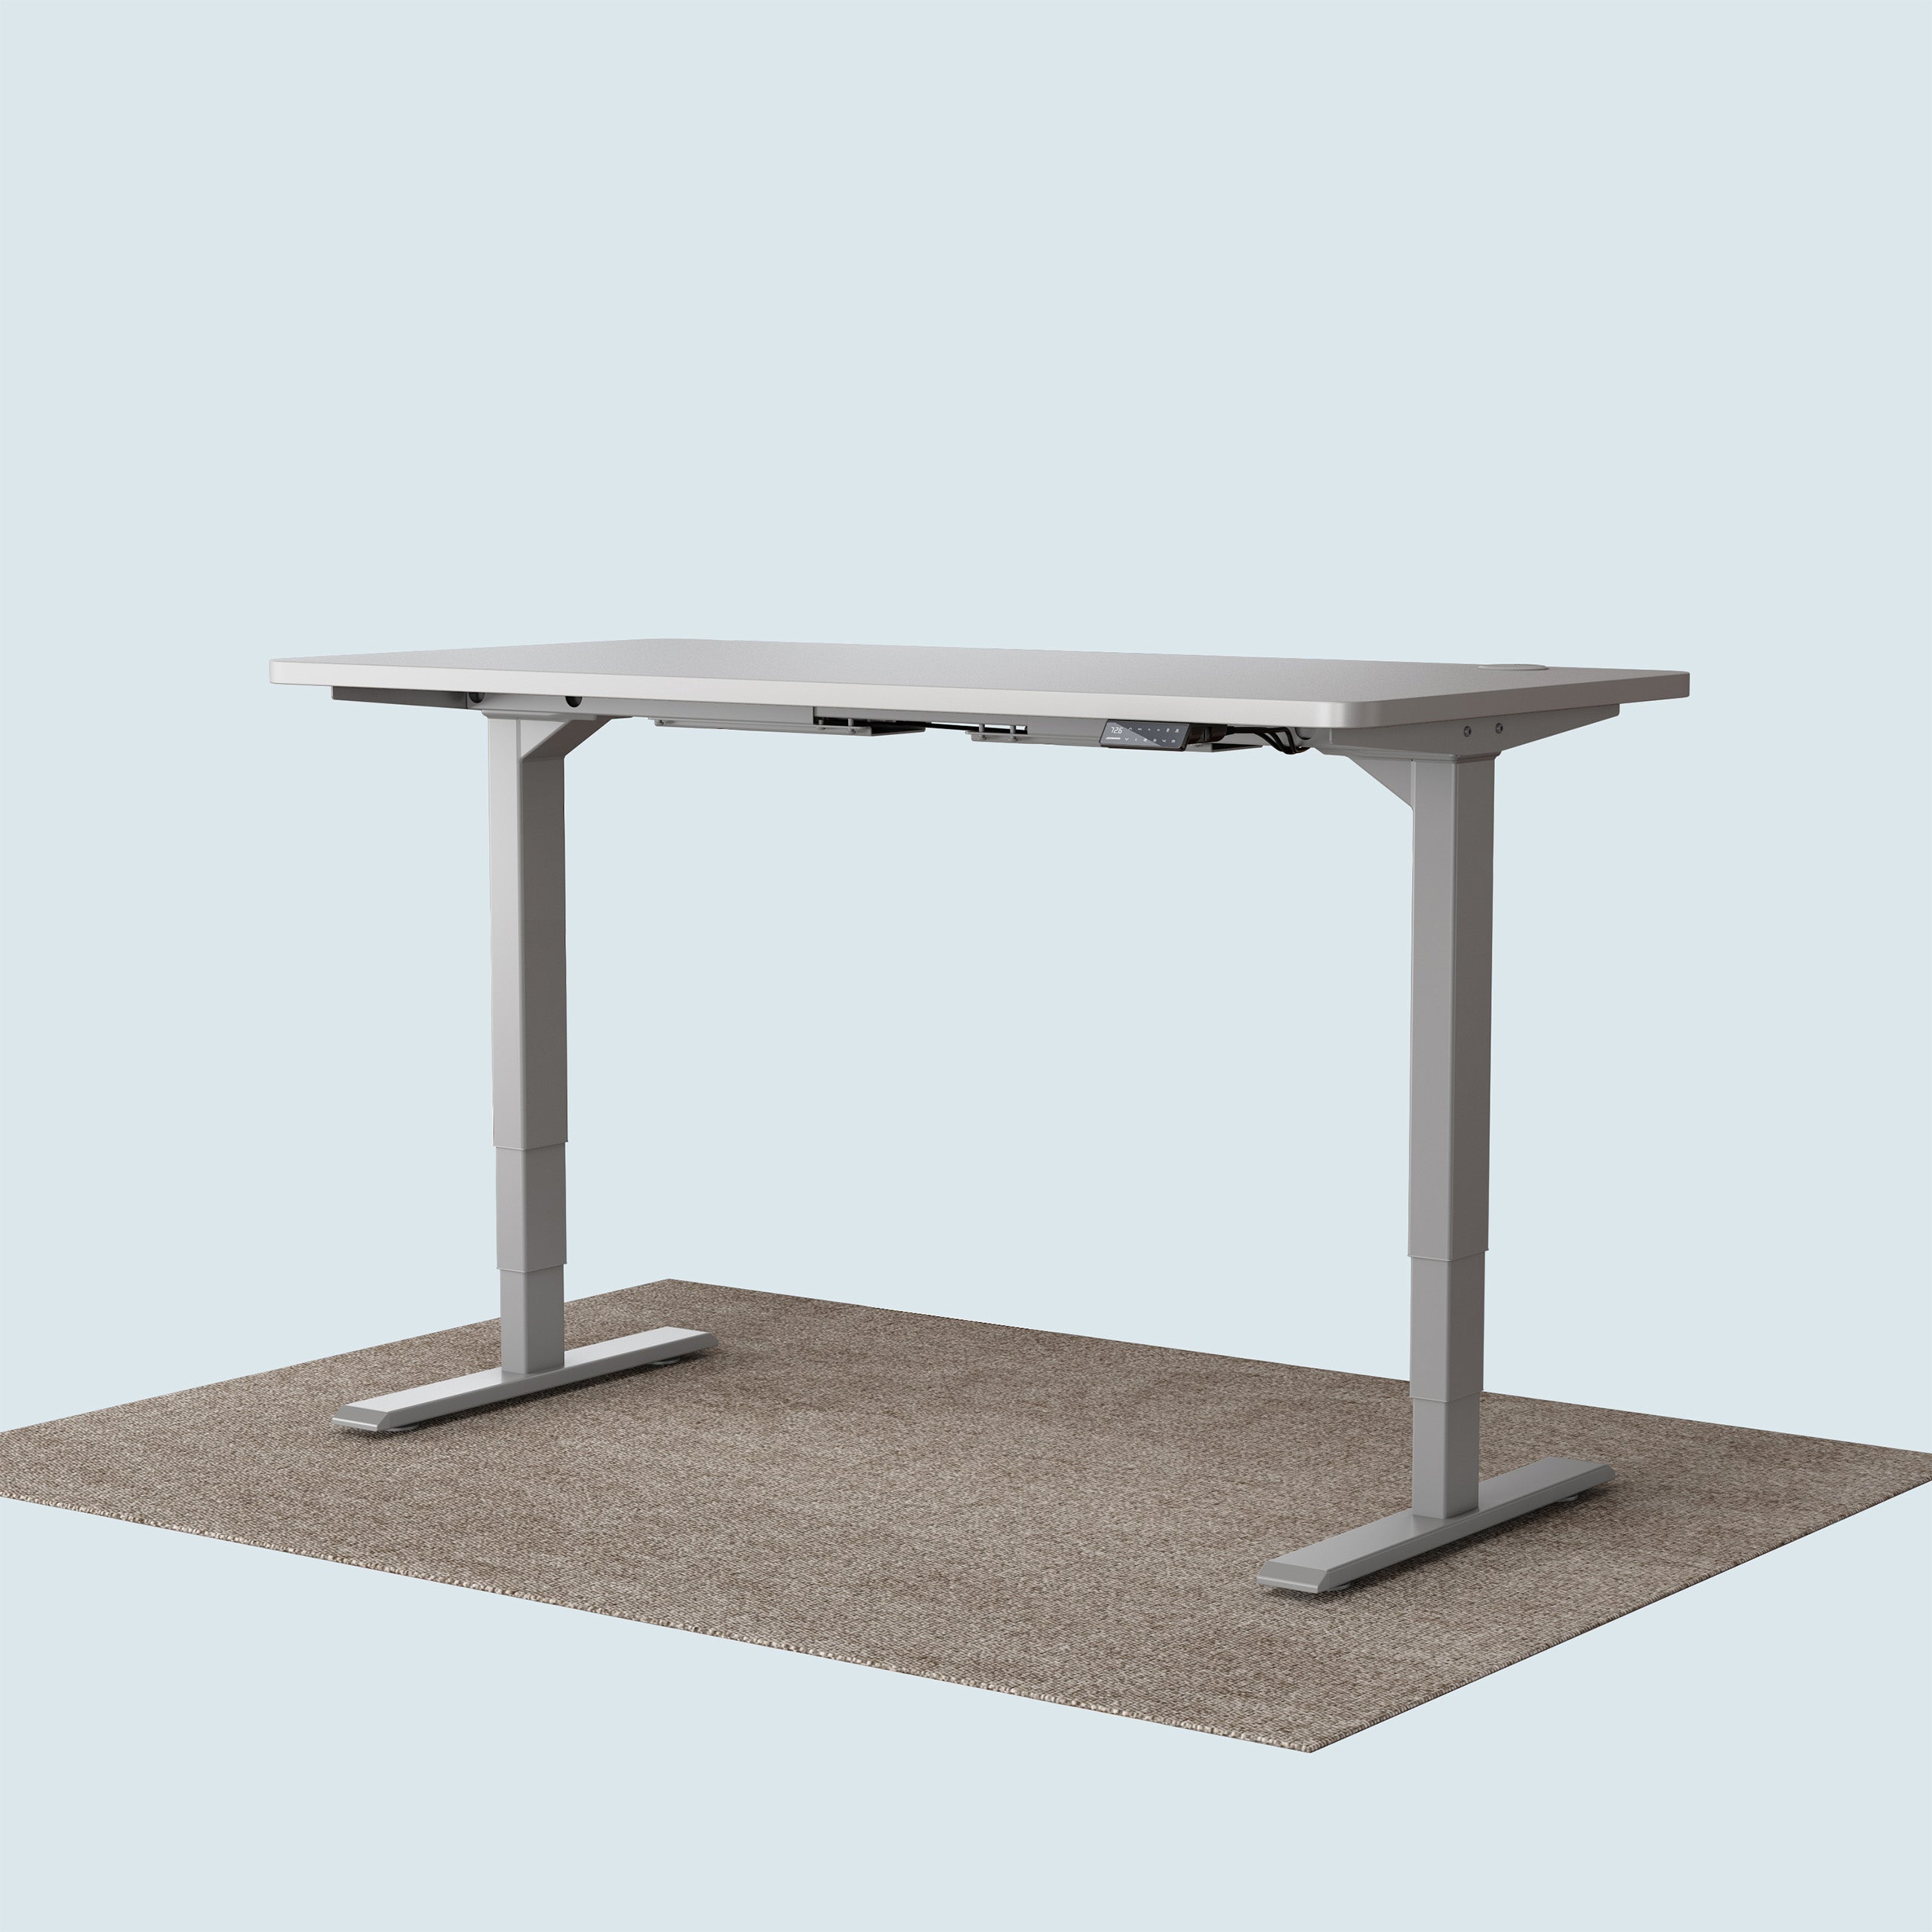 Maidesite T2 Pro Plus marco de escritorio ajustable en altura puede caber 120x60cm escritorio para uso de oficina en casa